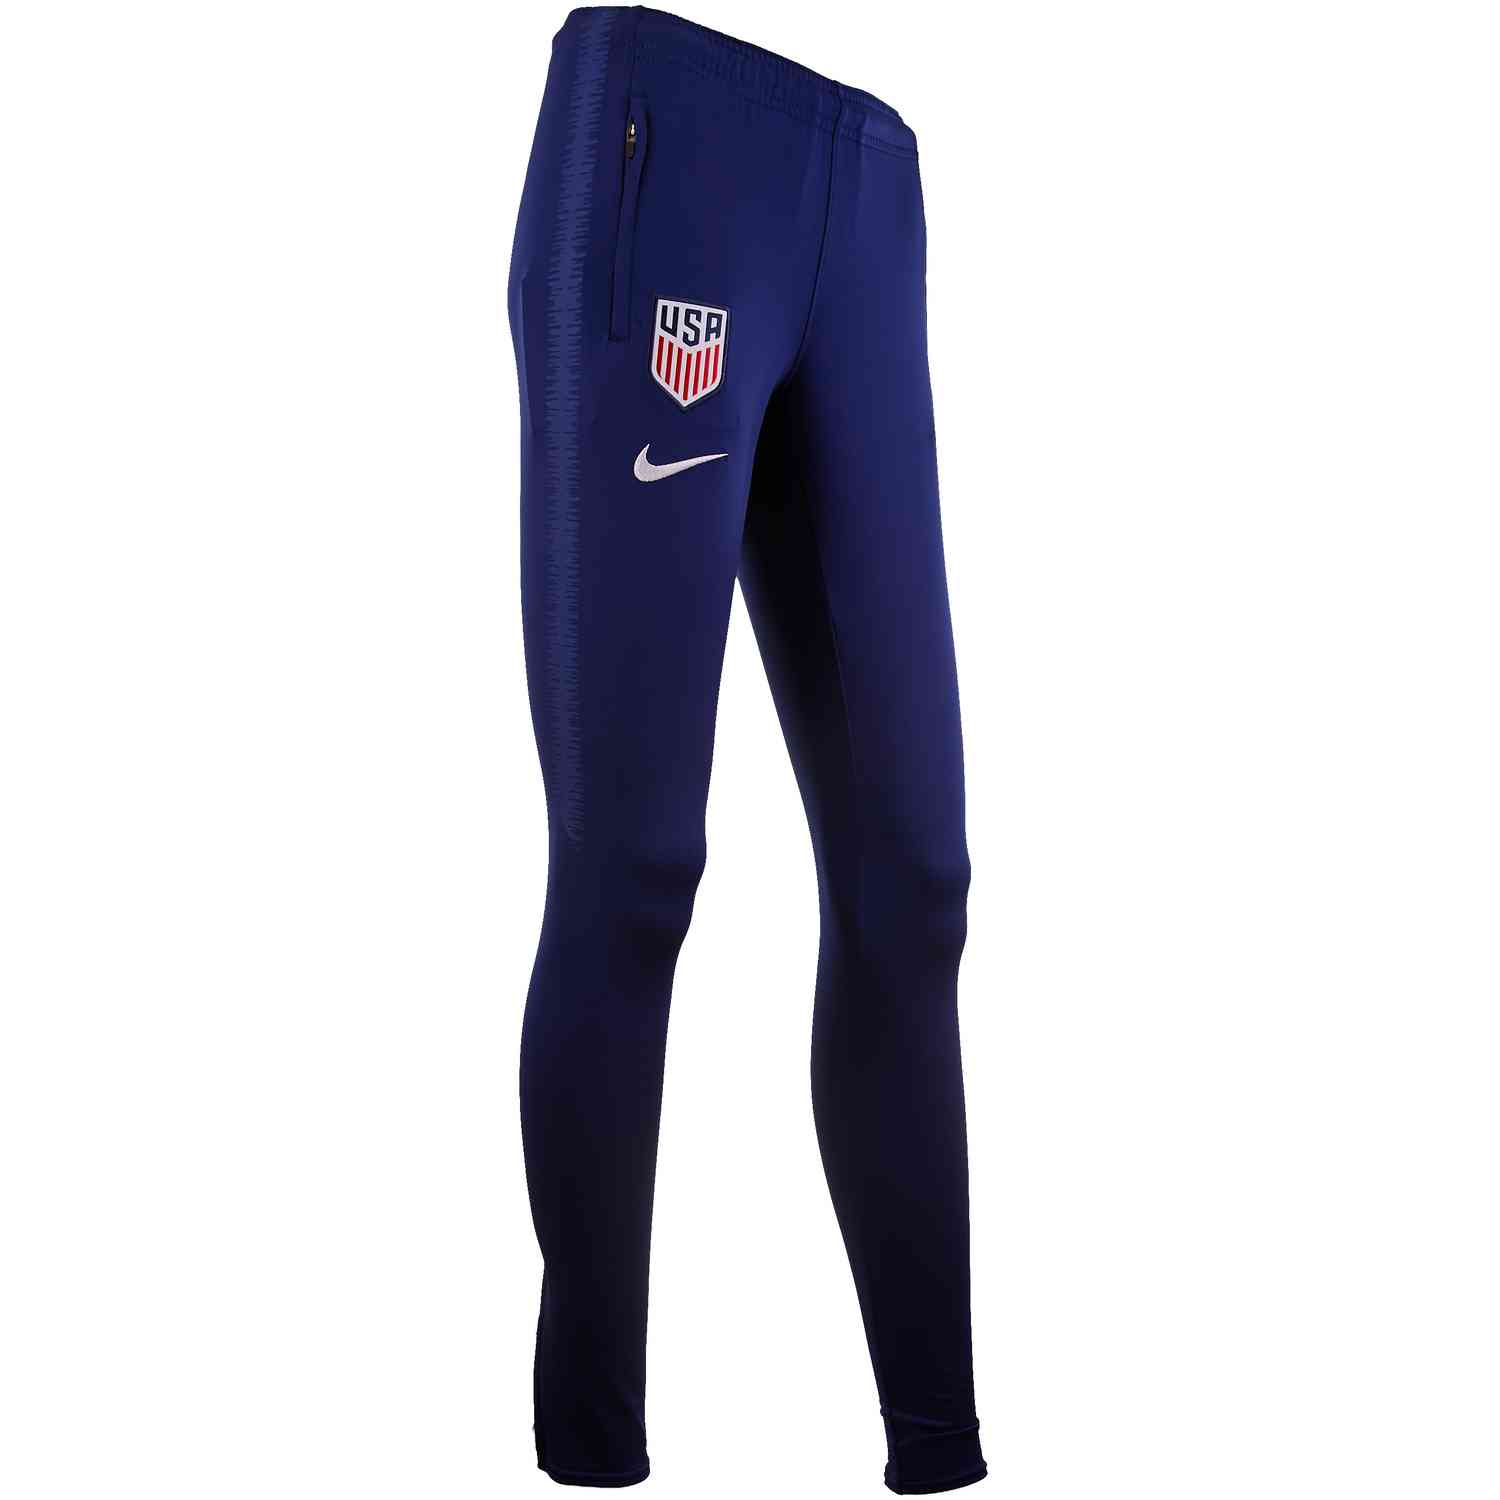 women's soccer training pants